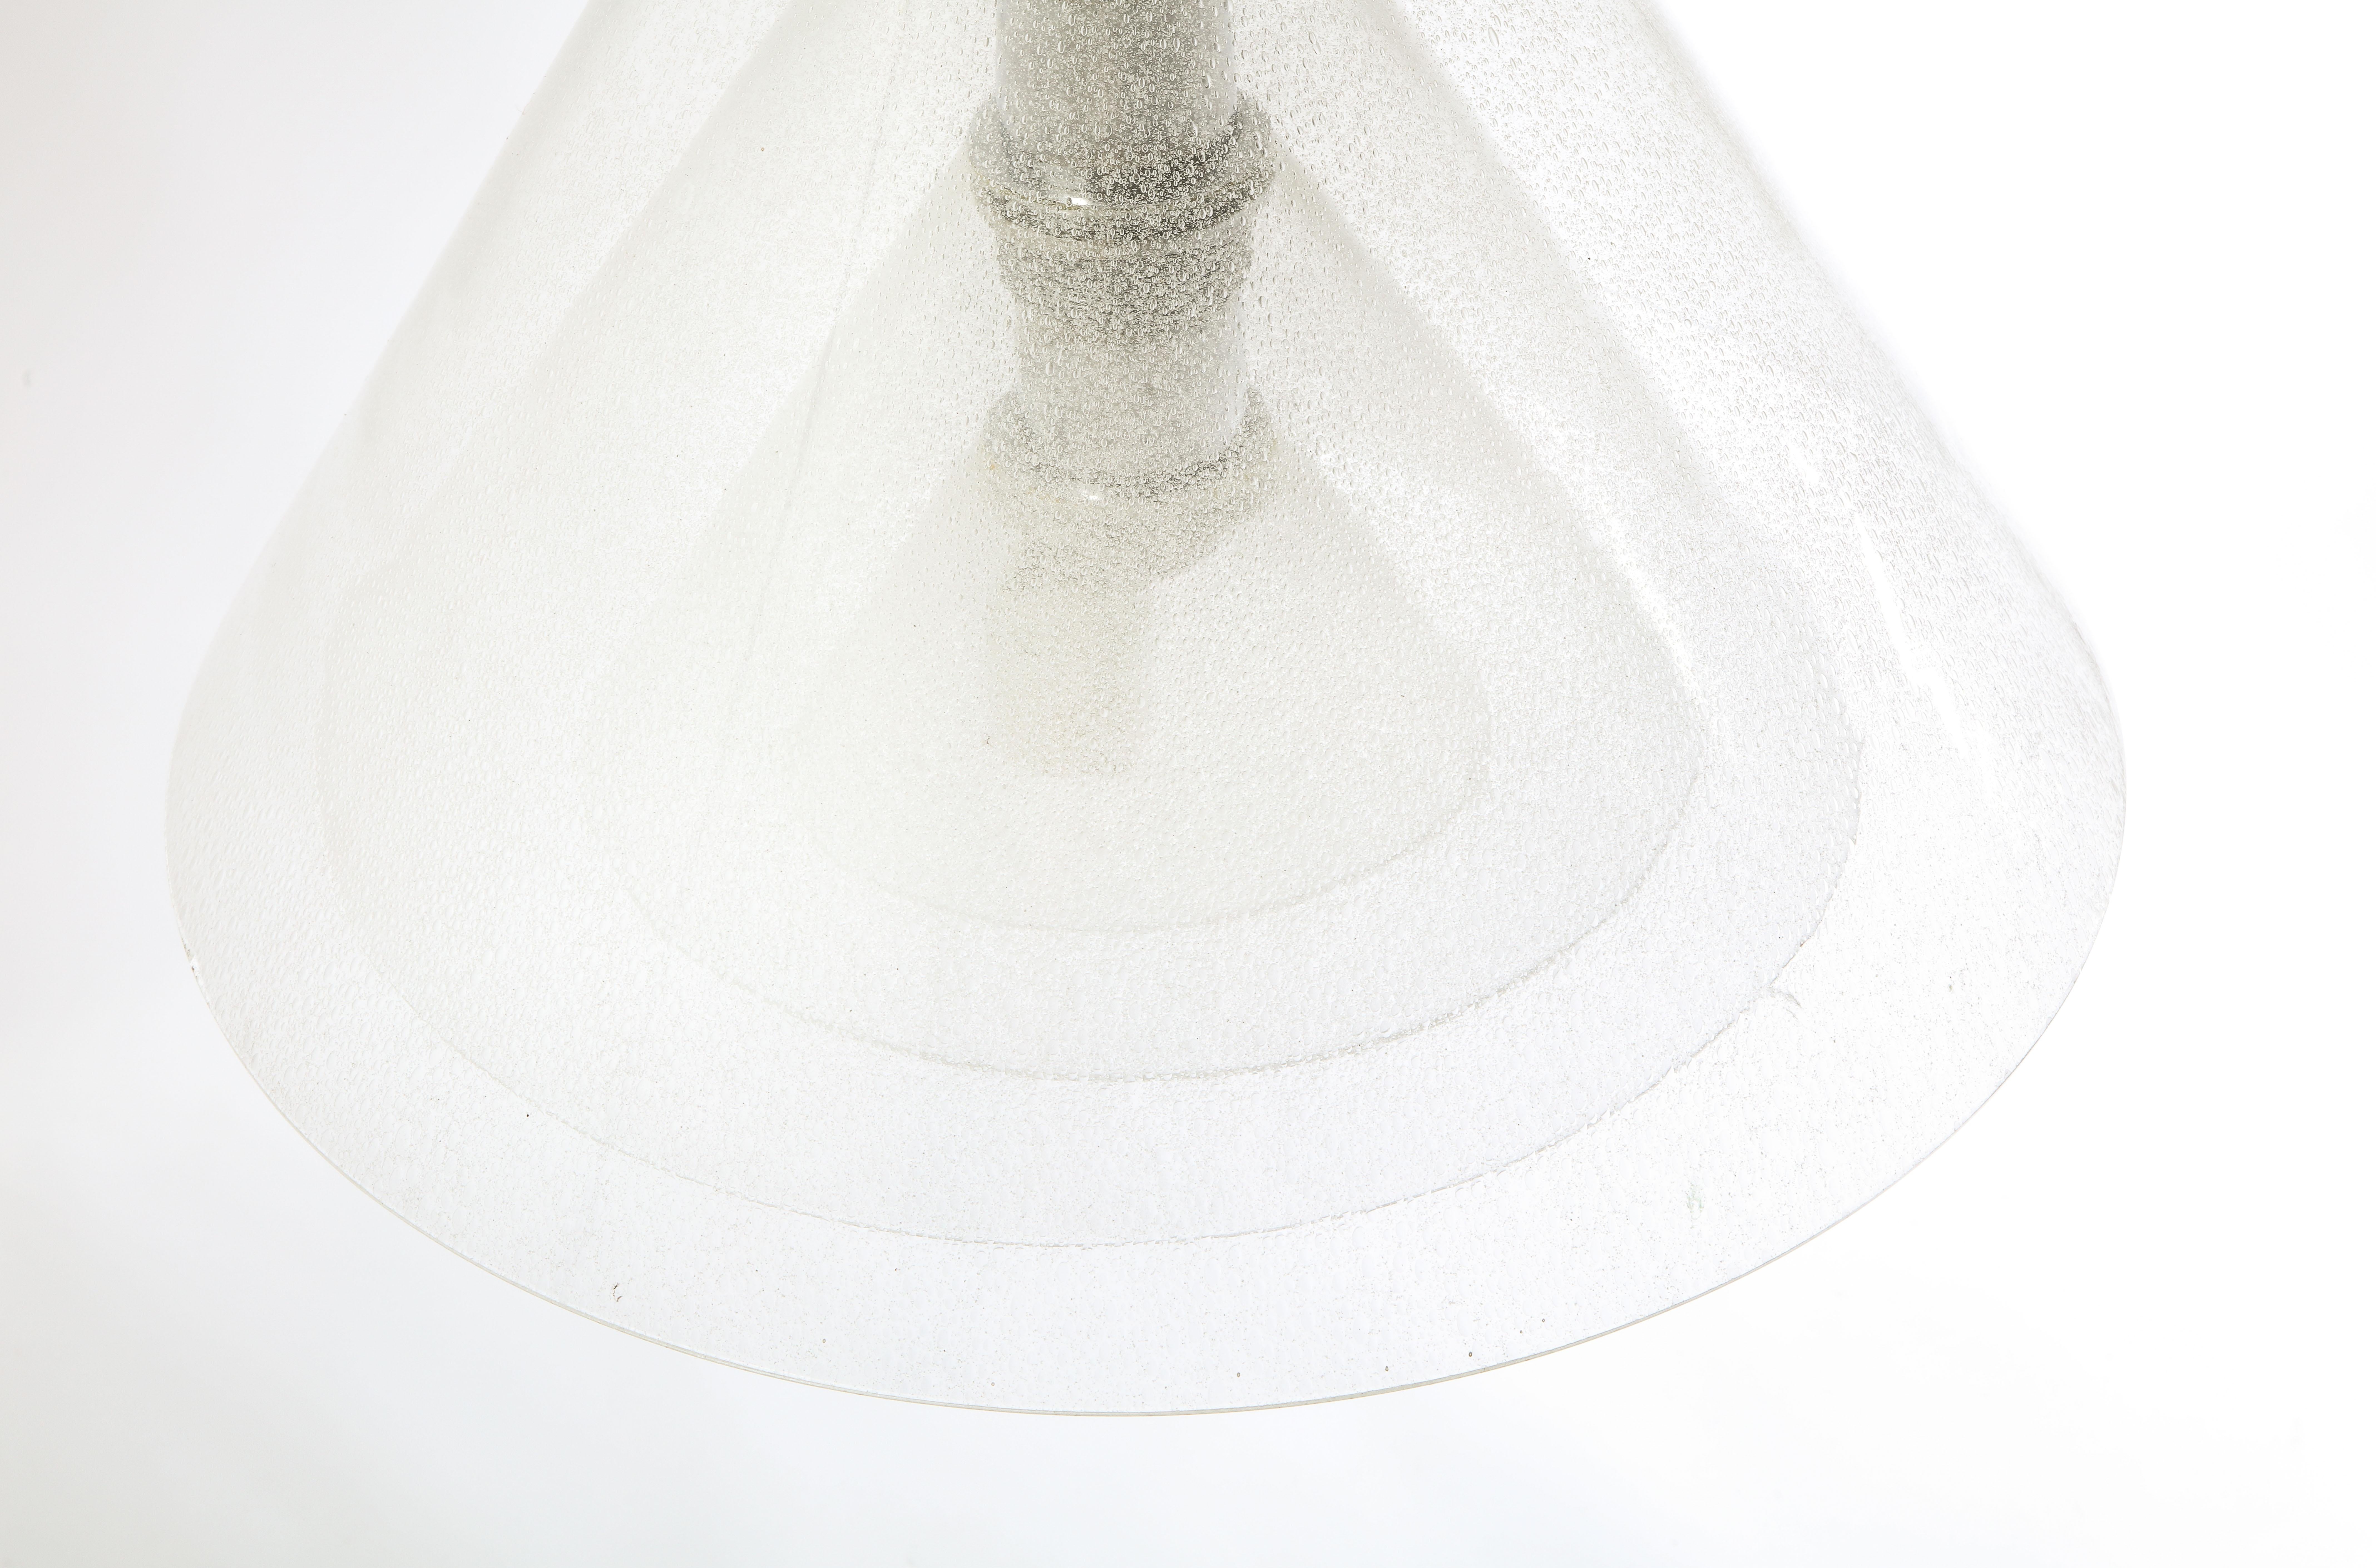 Alberto Nason Murano Glass Layered Concentric Cone Pendant, Italy 1970's For Sale 5